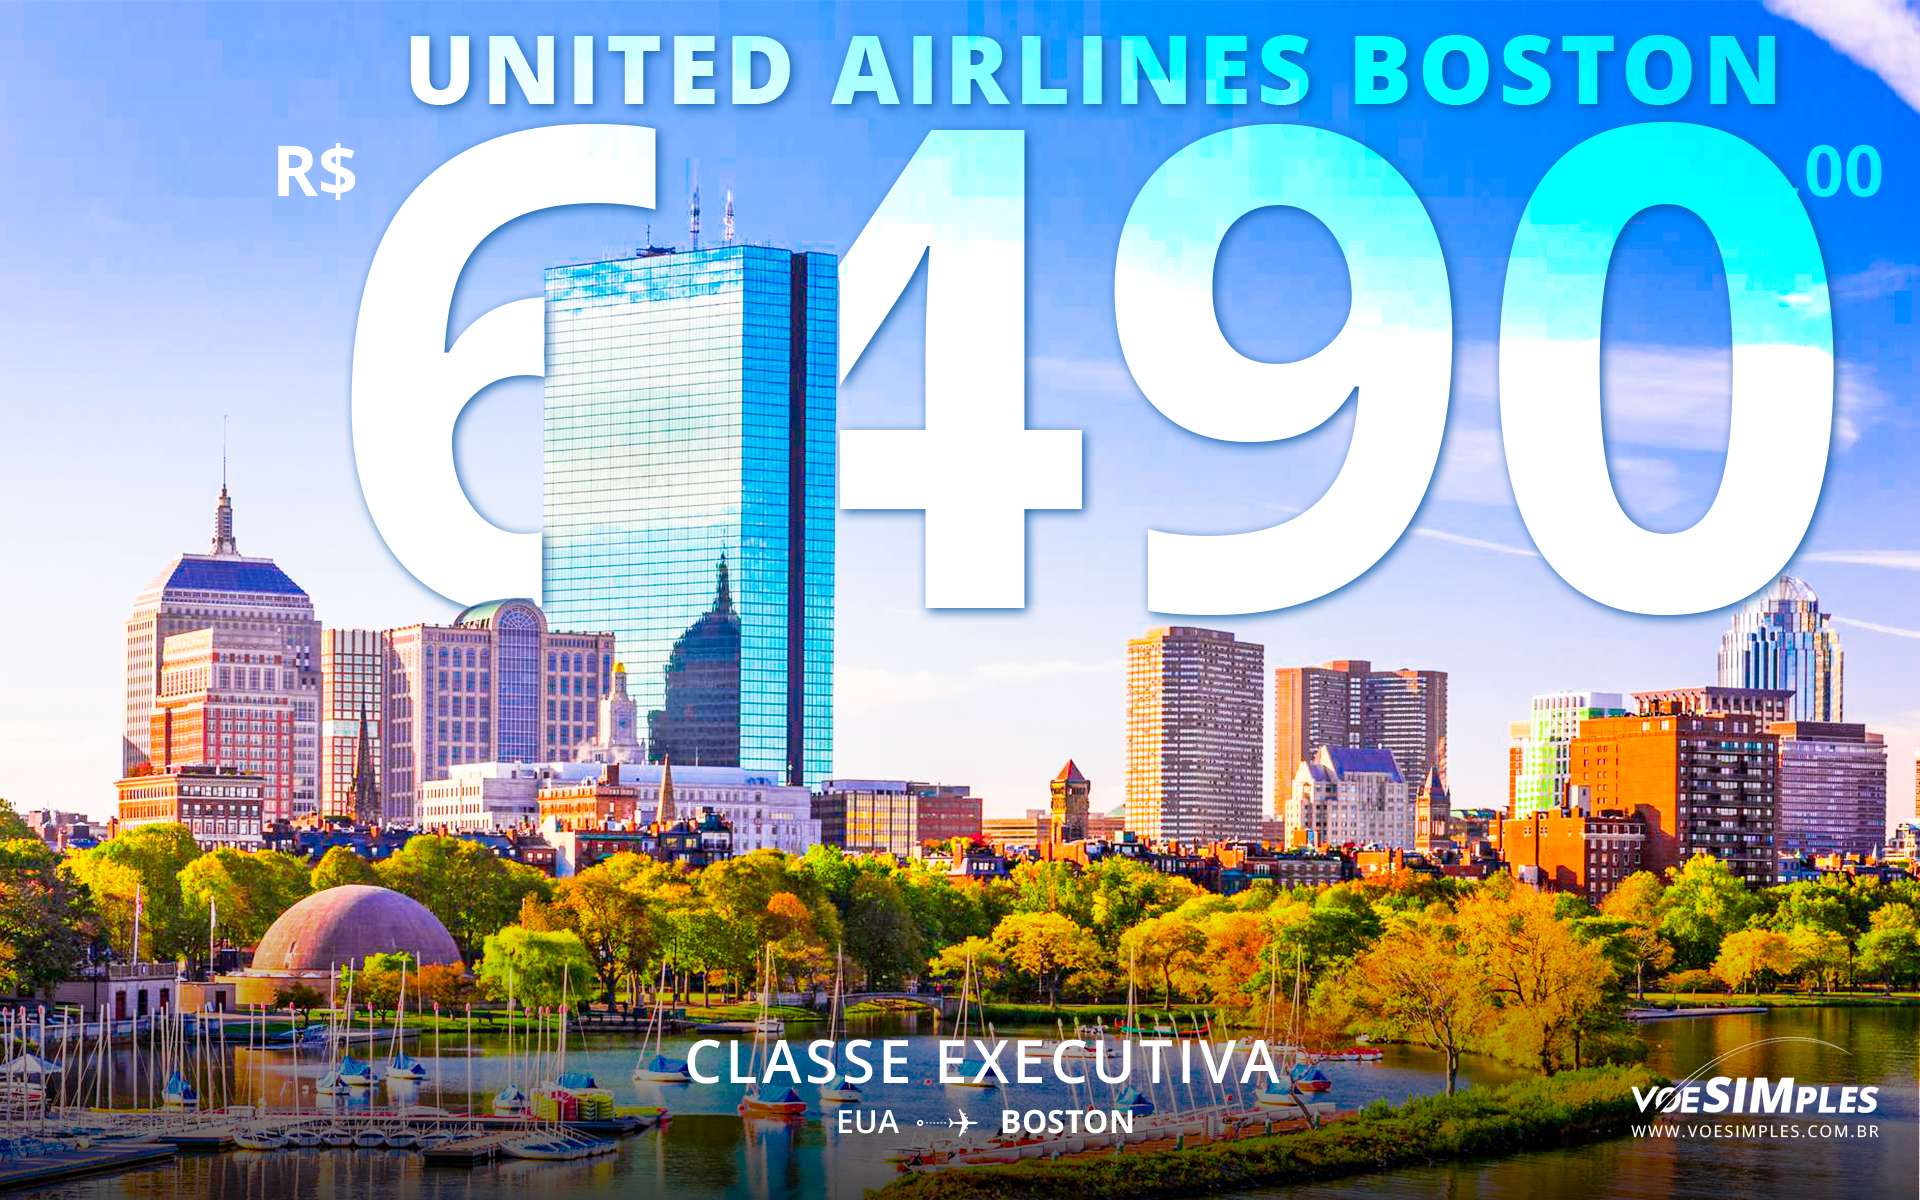 passagem-aerea-promocional-executiva-american-airlines-boston-eua-america-norte-voe-simples-promo-sdfull